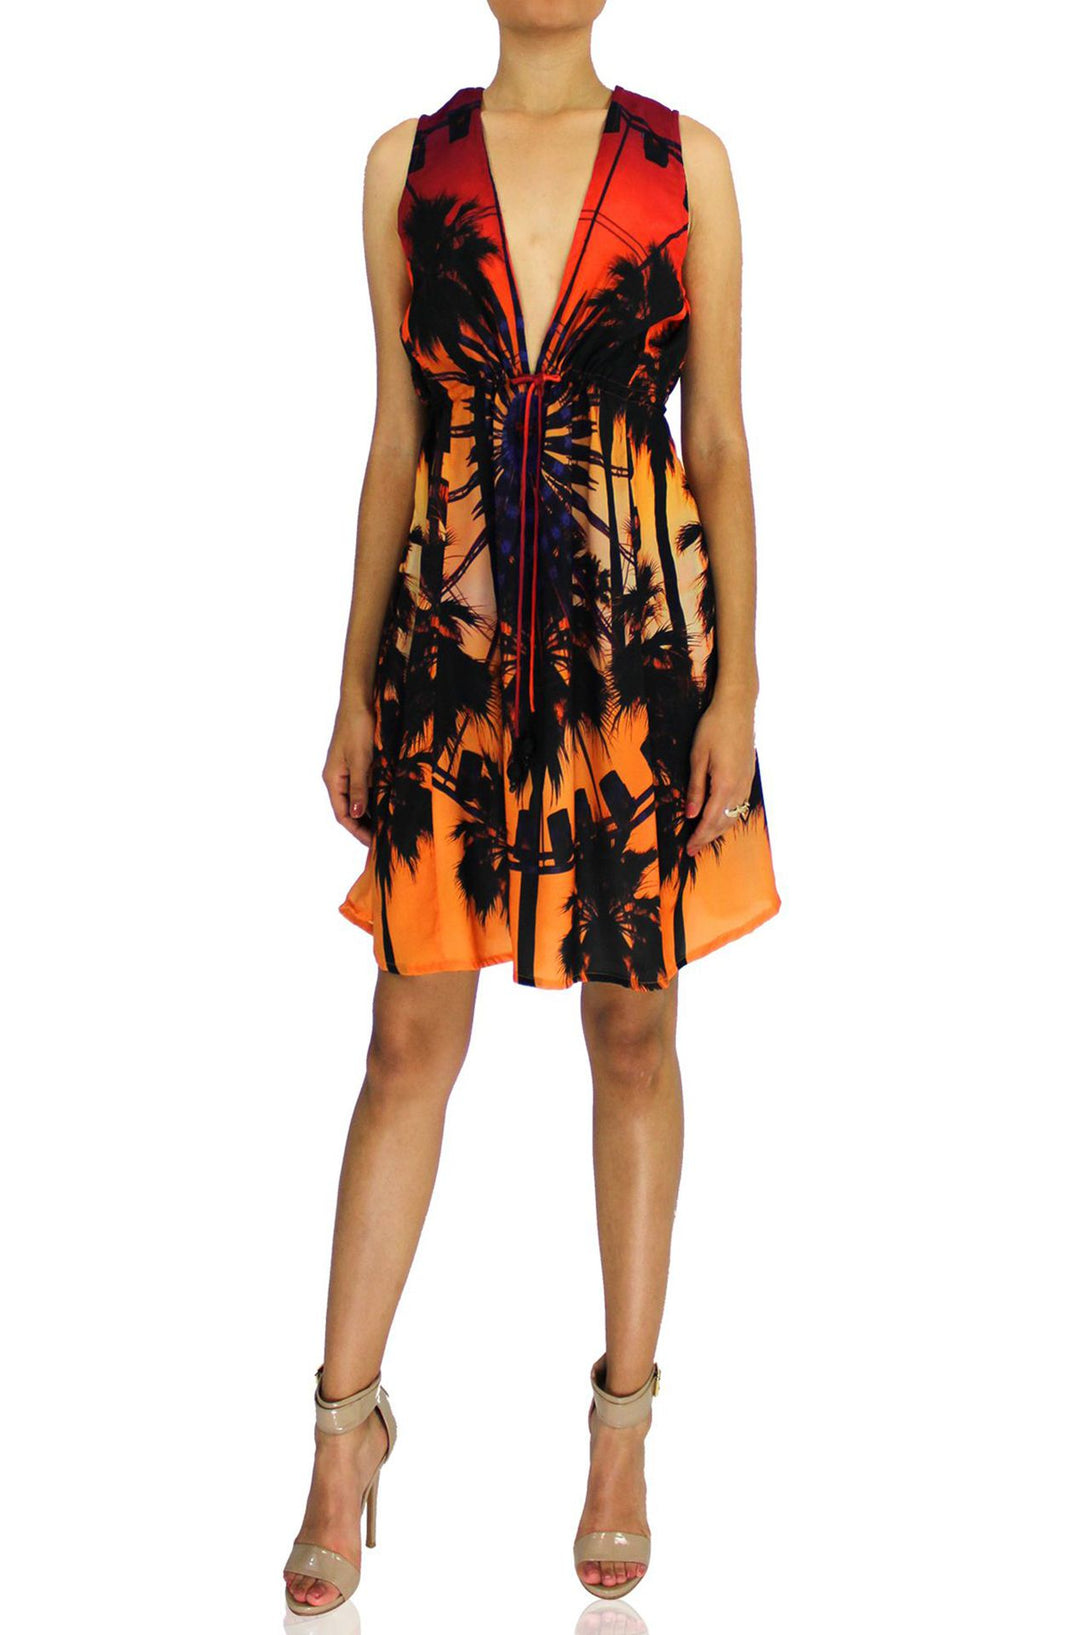  short dress orange, short sleeveless summer dresses,Shahida Parides, mini frock for women,